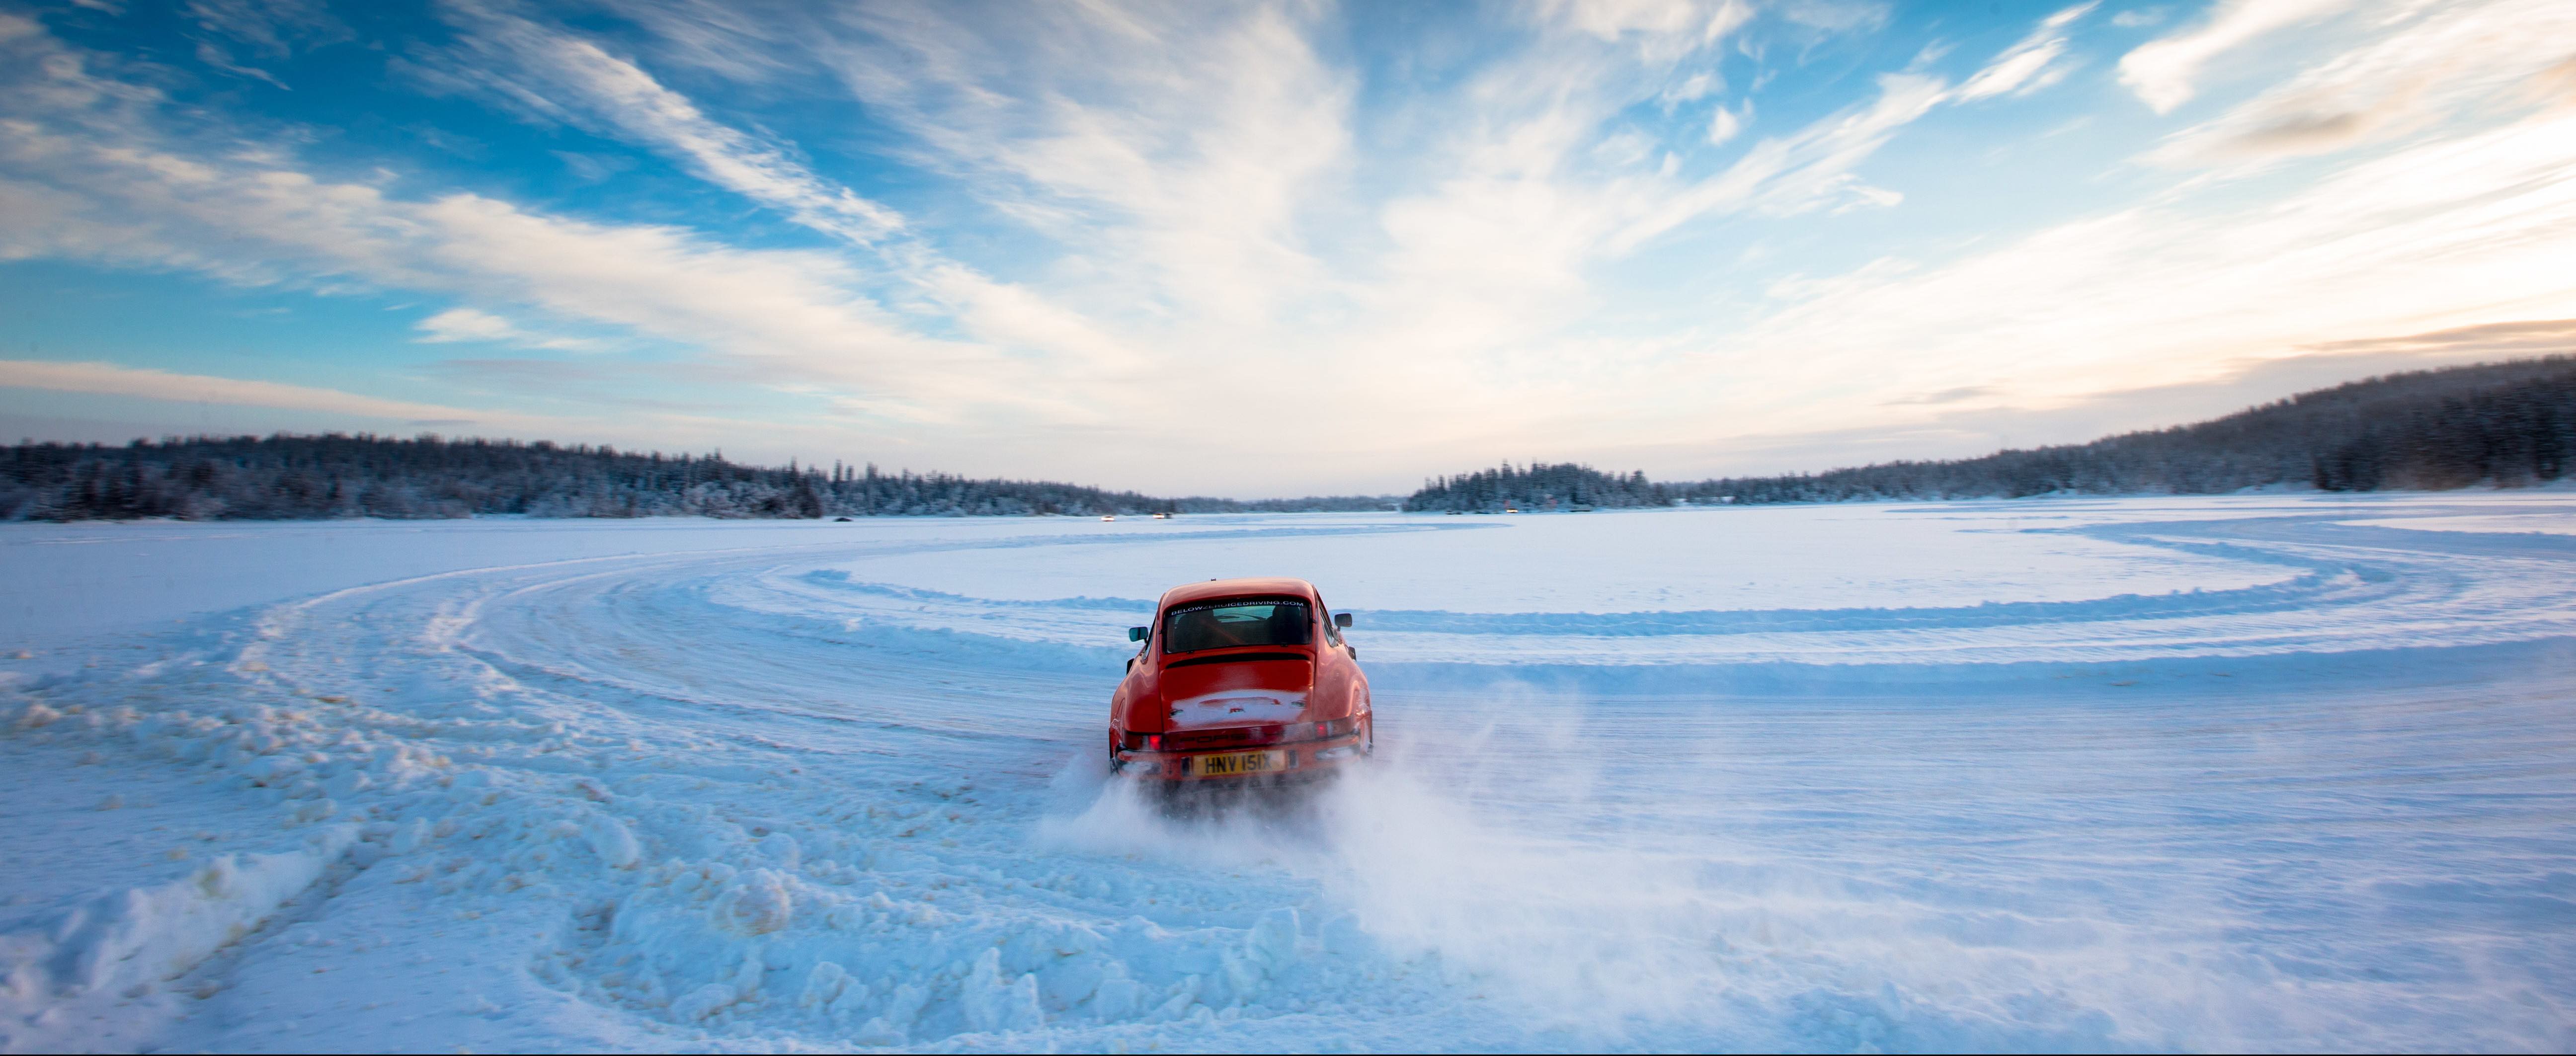 Extreme travel – driving a Porsche 911 on a frozen lake